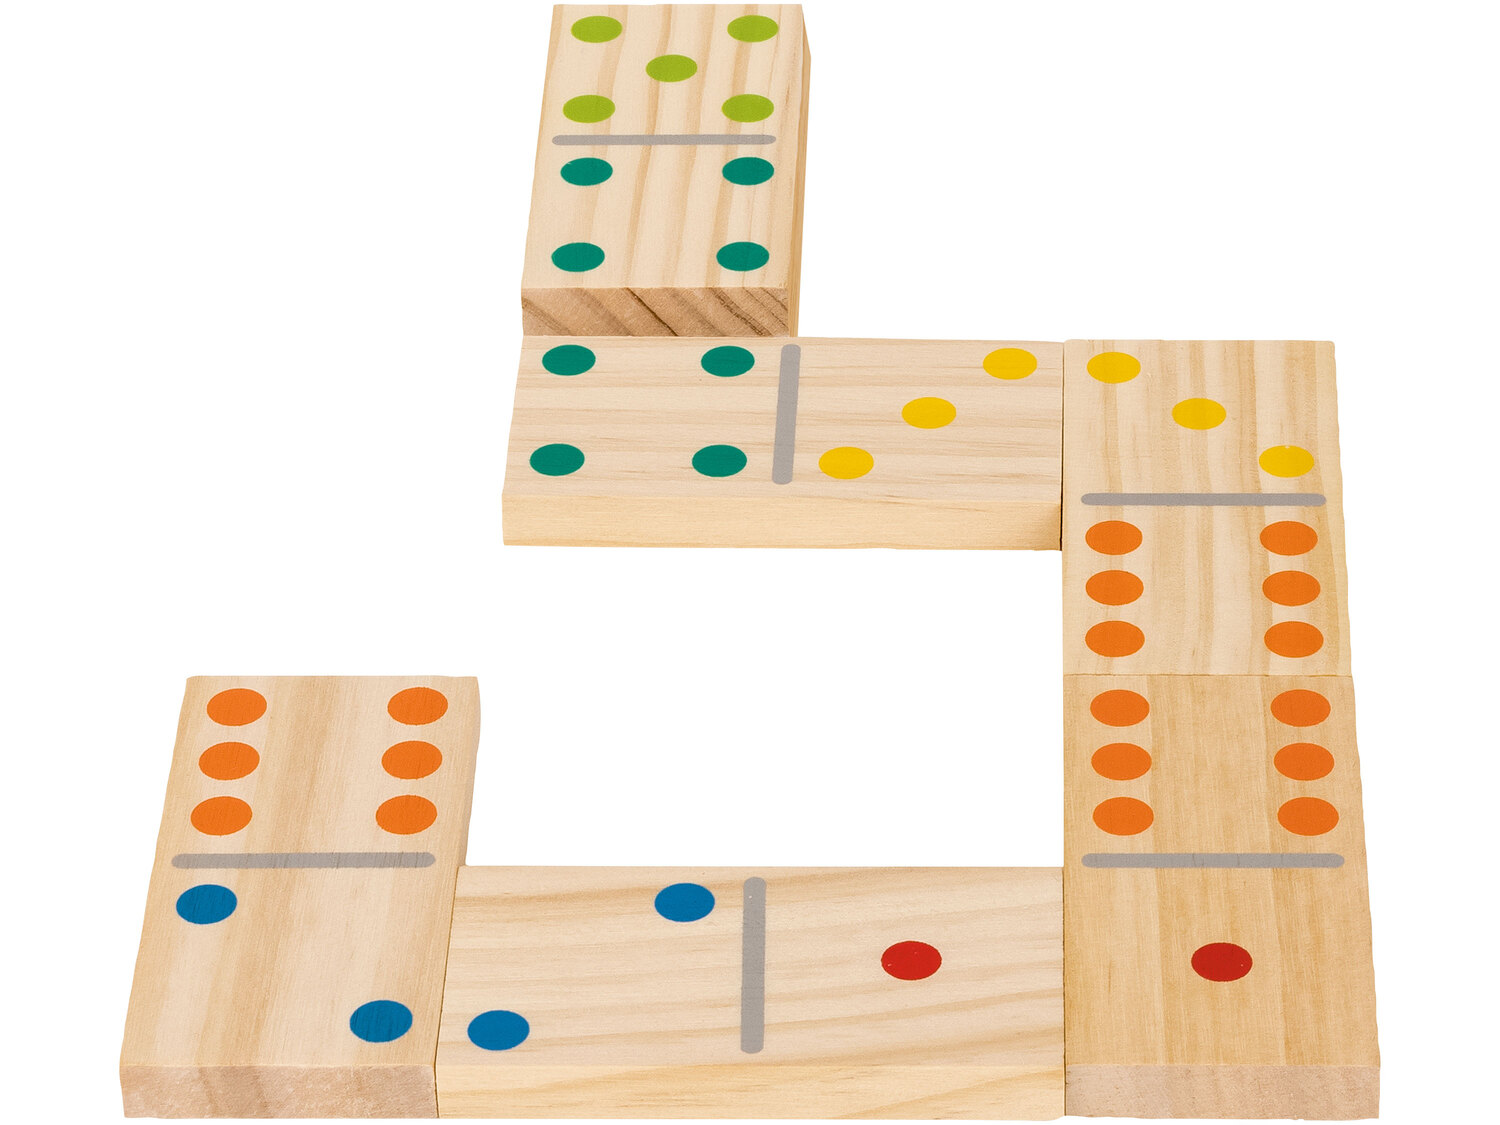 Zestaw do gry w domino Playtive, cena 44,99 PLN 
- z naturalnego drewna
- w zestawie ...